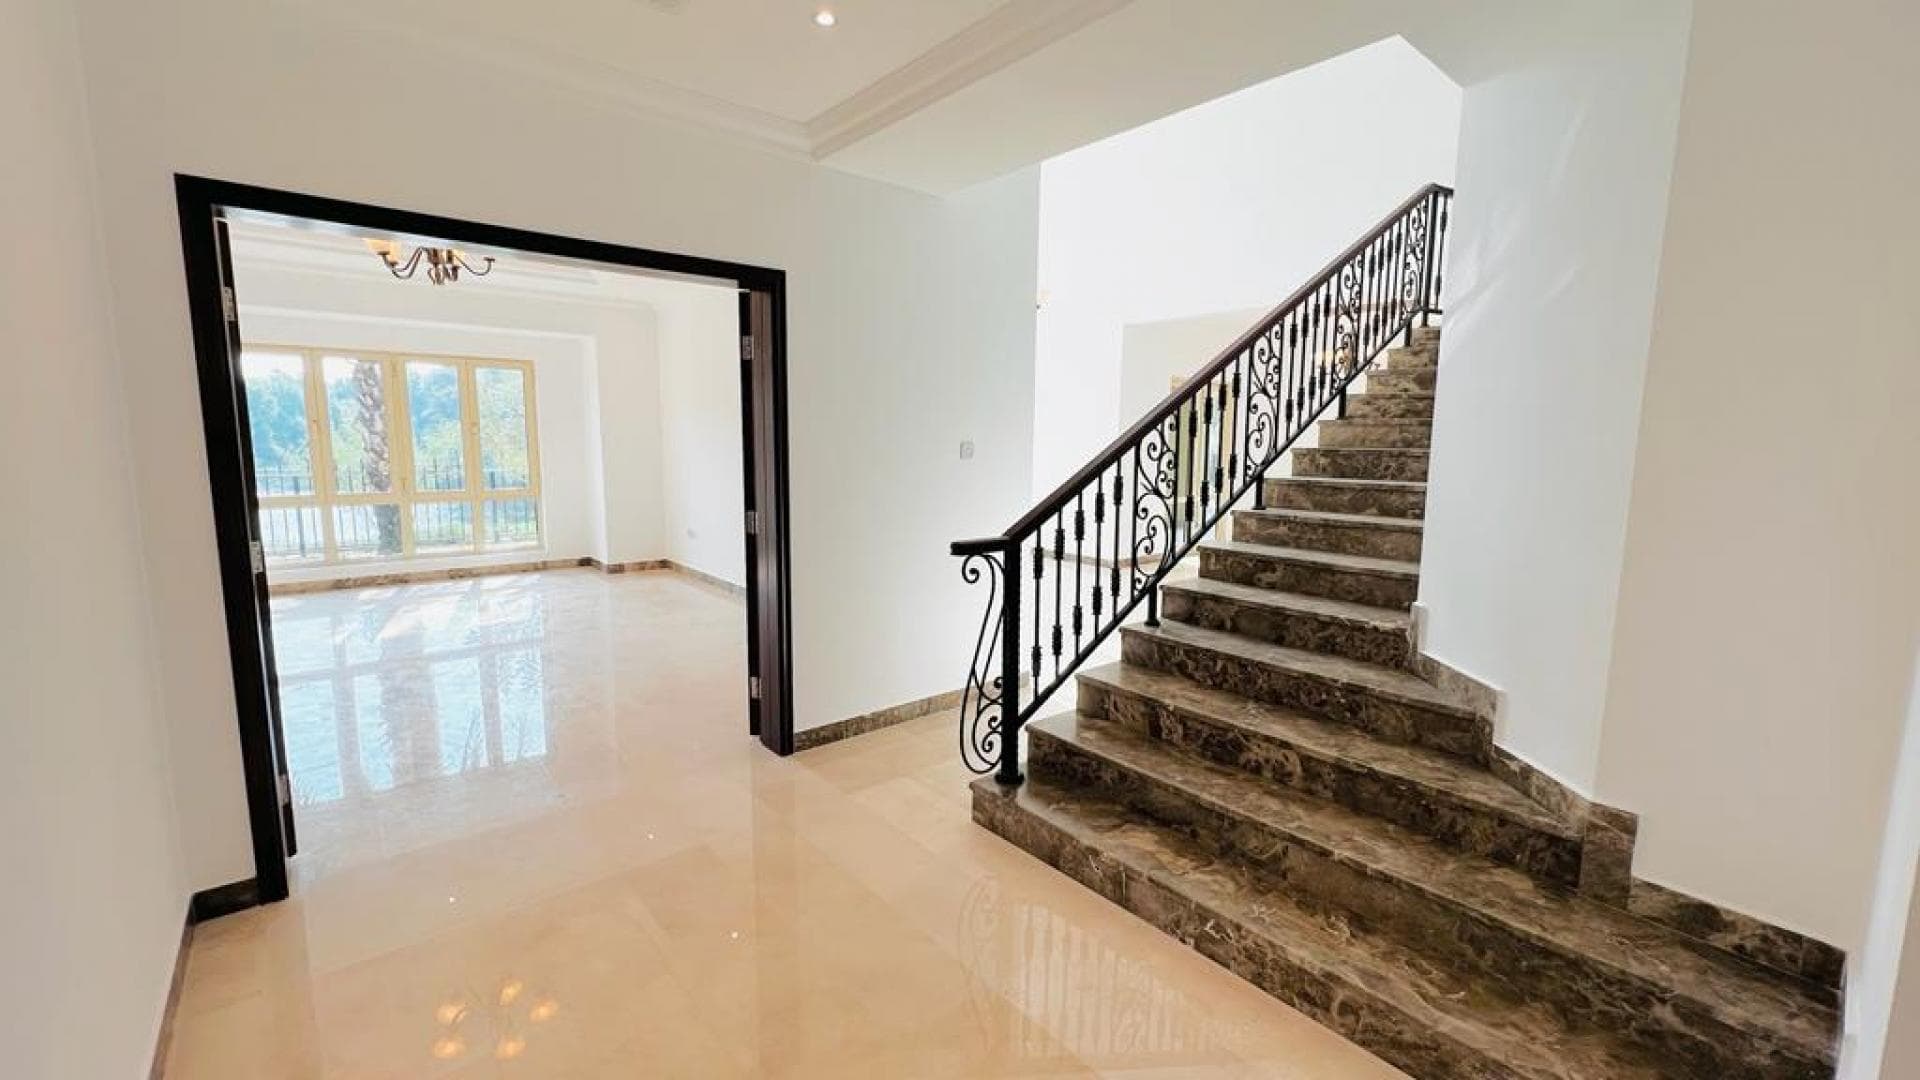 4 Bedroom Villa For Rent Al Thamam 13 Lp18938 258382cc491e3a00.jpeg